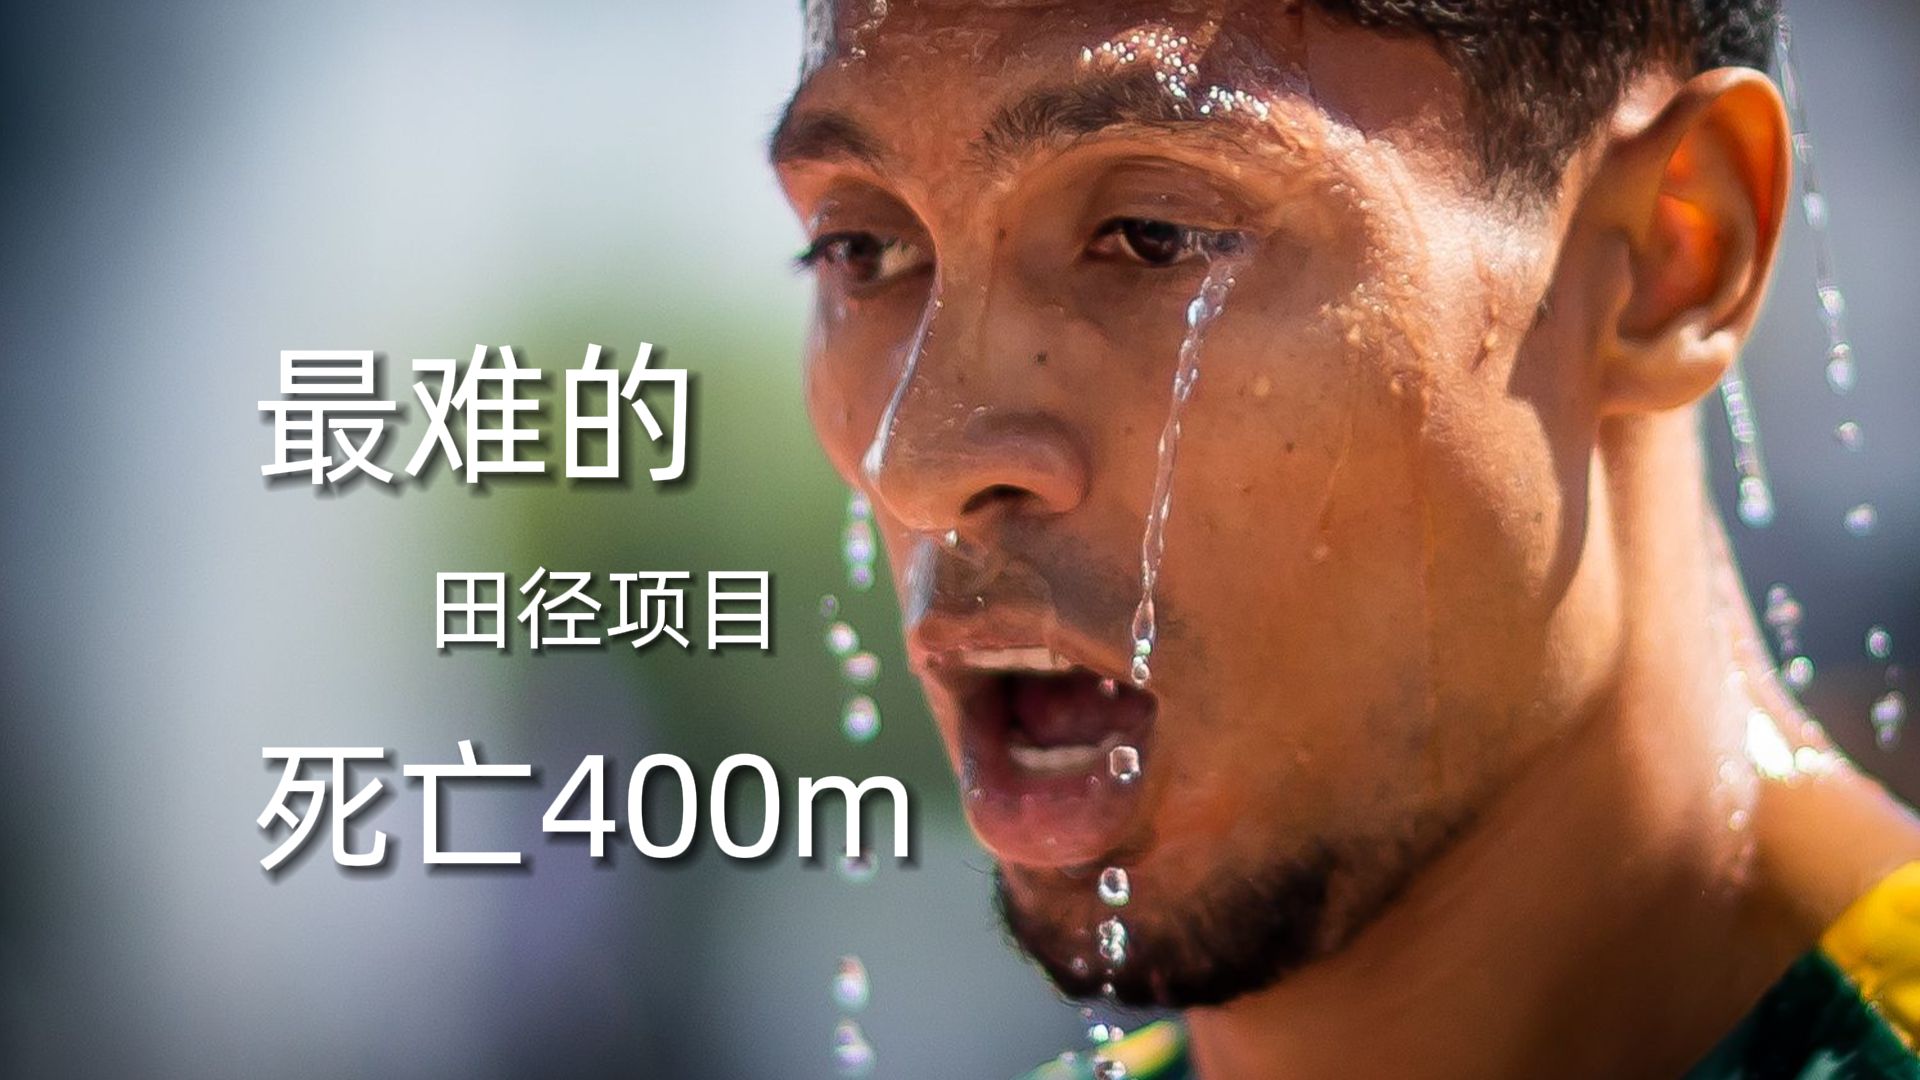 “这个视频可能会把你累到”沉浸式体验田径中最难的项目——400m，范尼凯克直接累趴！